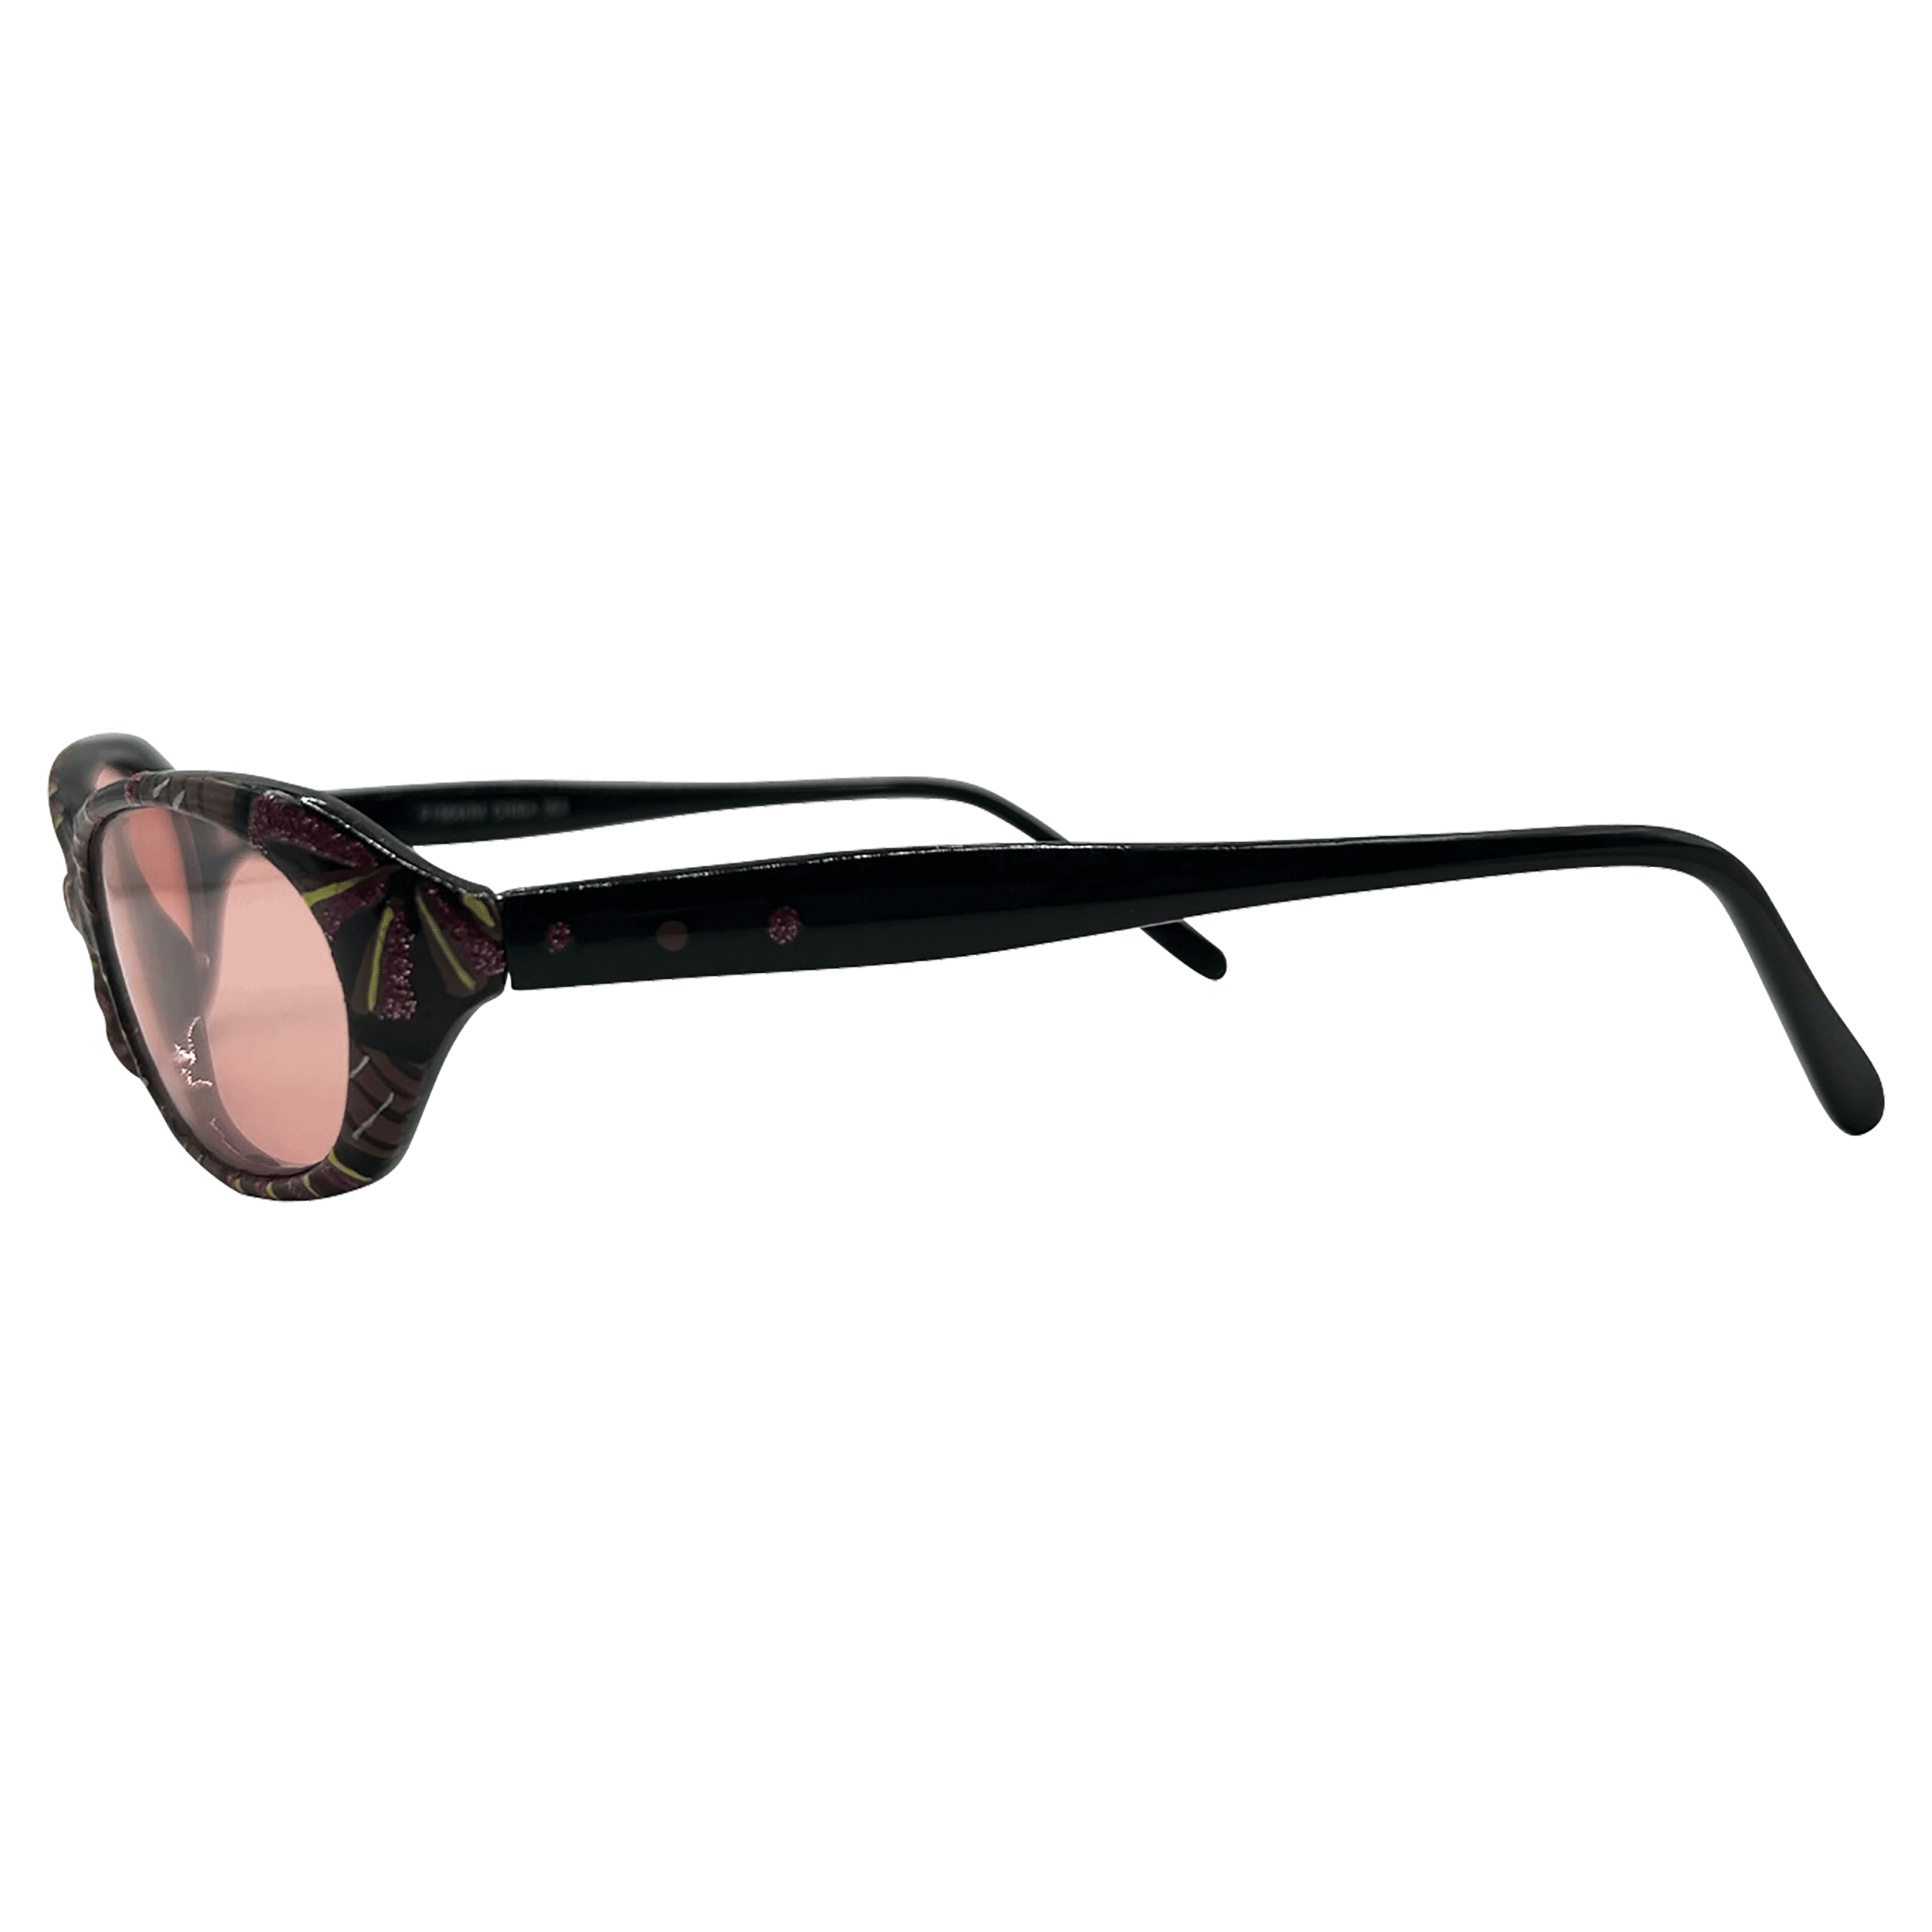 SPLATTER Oval Vintage Sunglasses